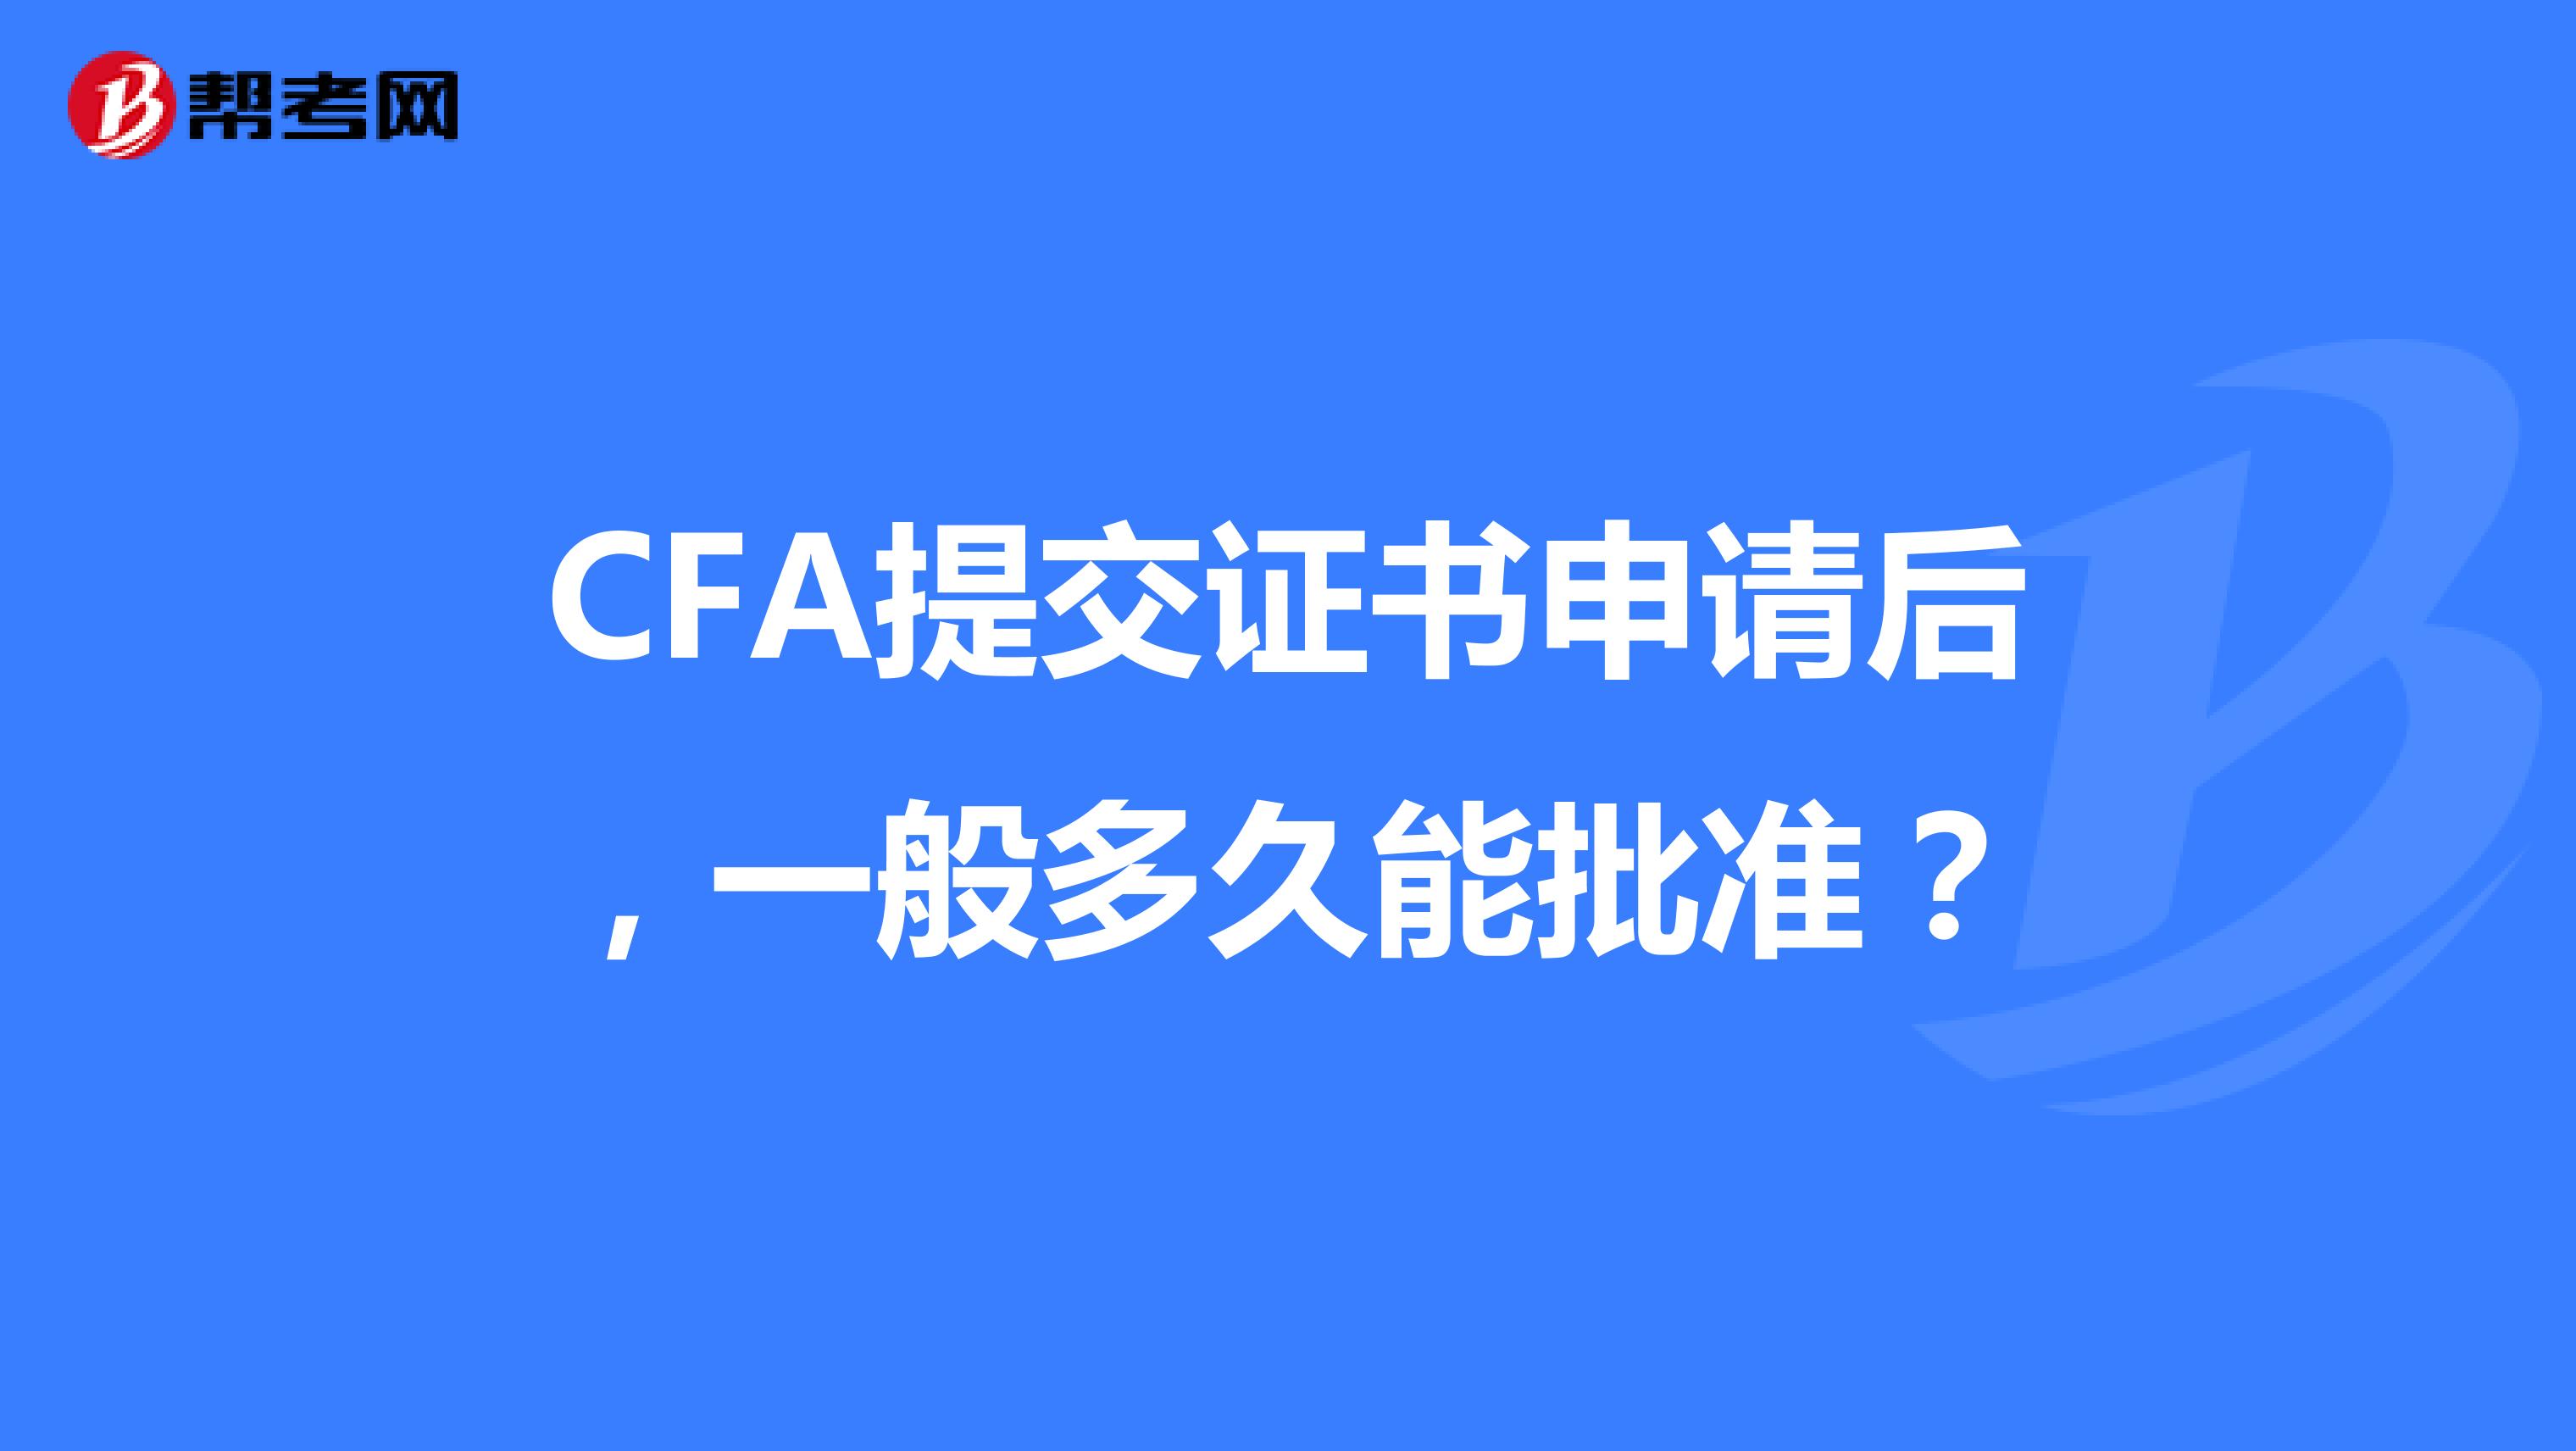 CFA提交证书申请后，一般多久能批准？